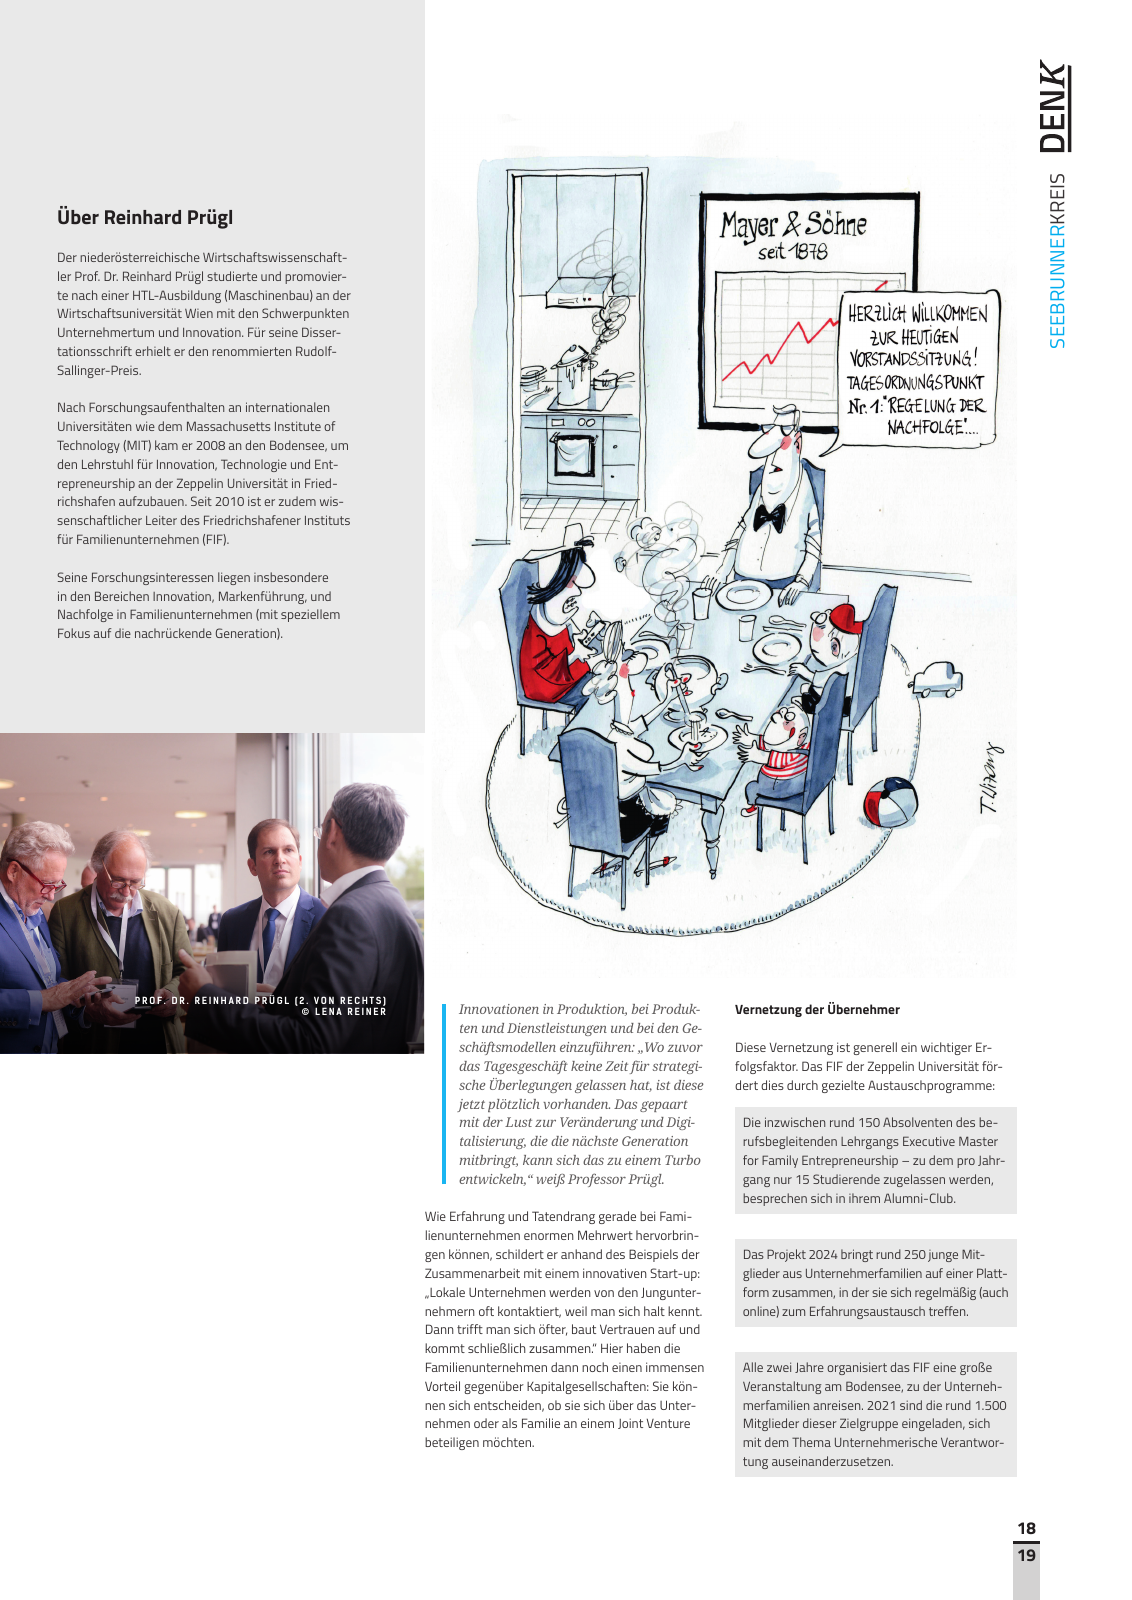 Vorschau Denk - Edition 05/2020 Seite 19